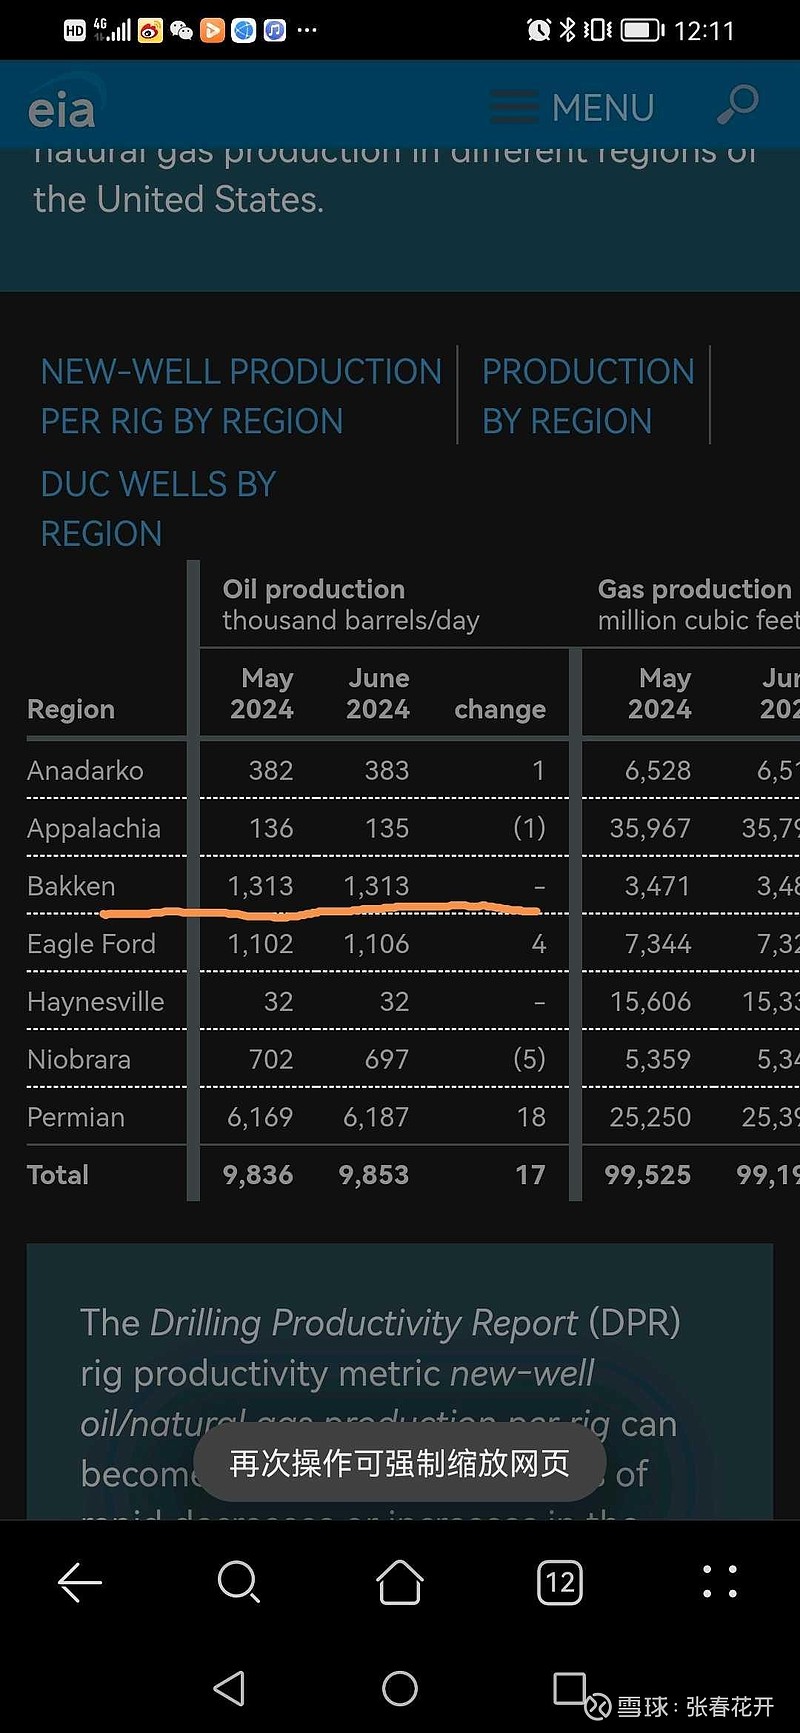 北达科他州原油产量与Eia对比